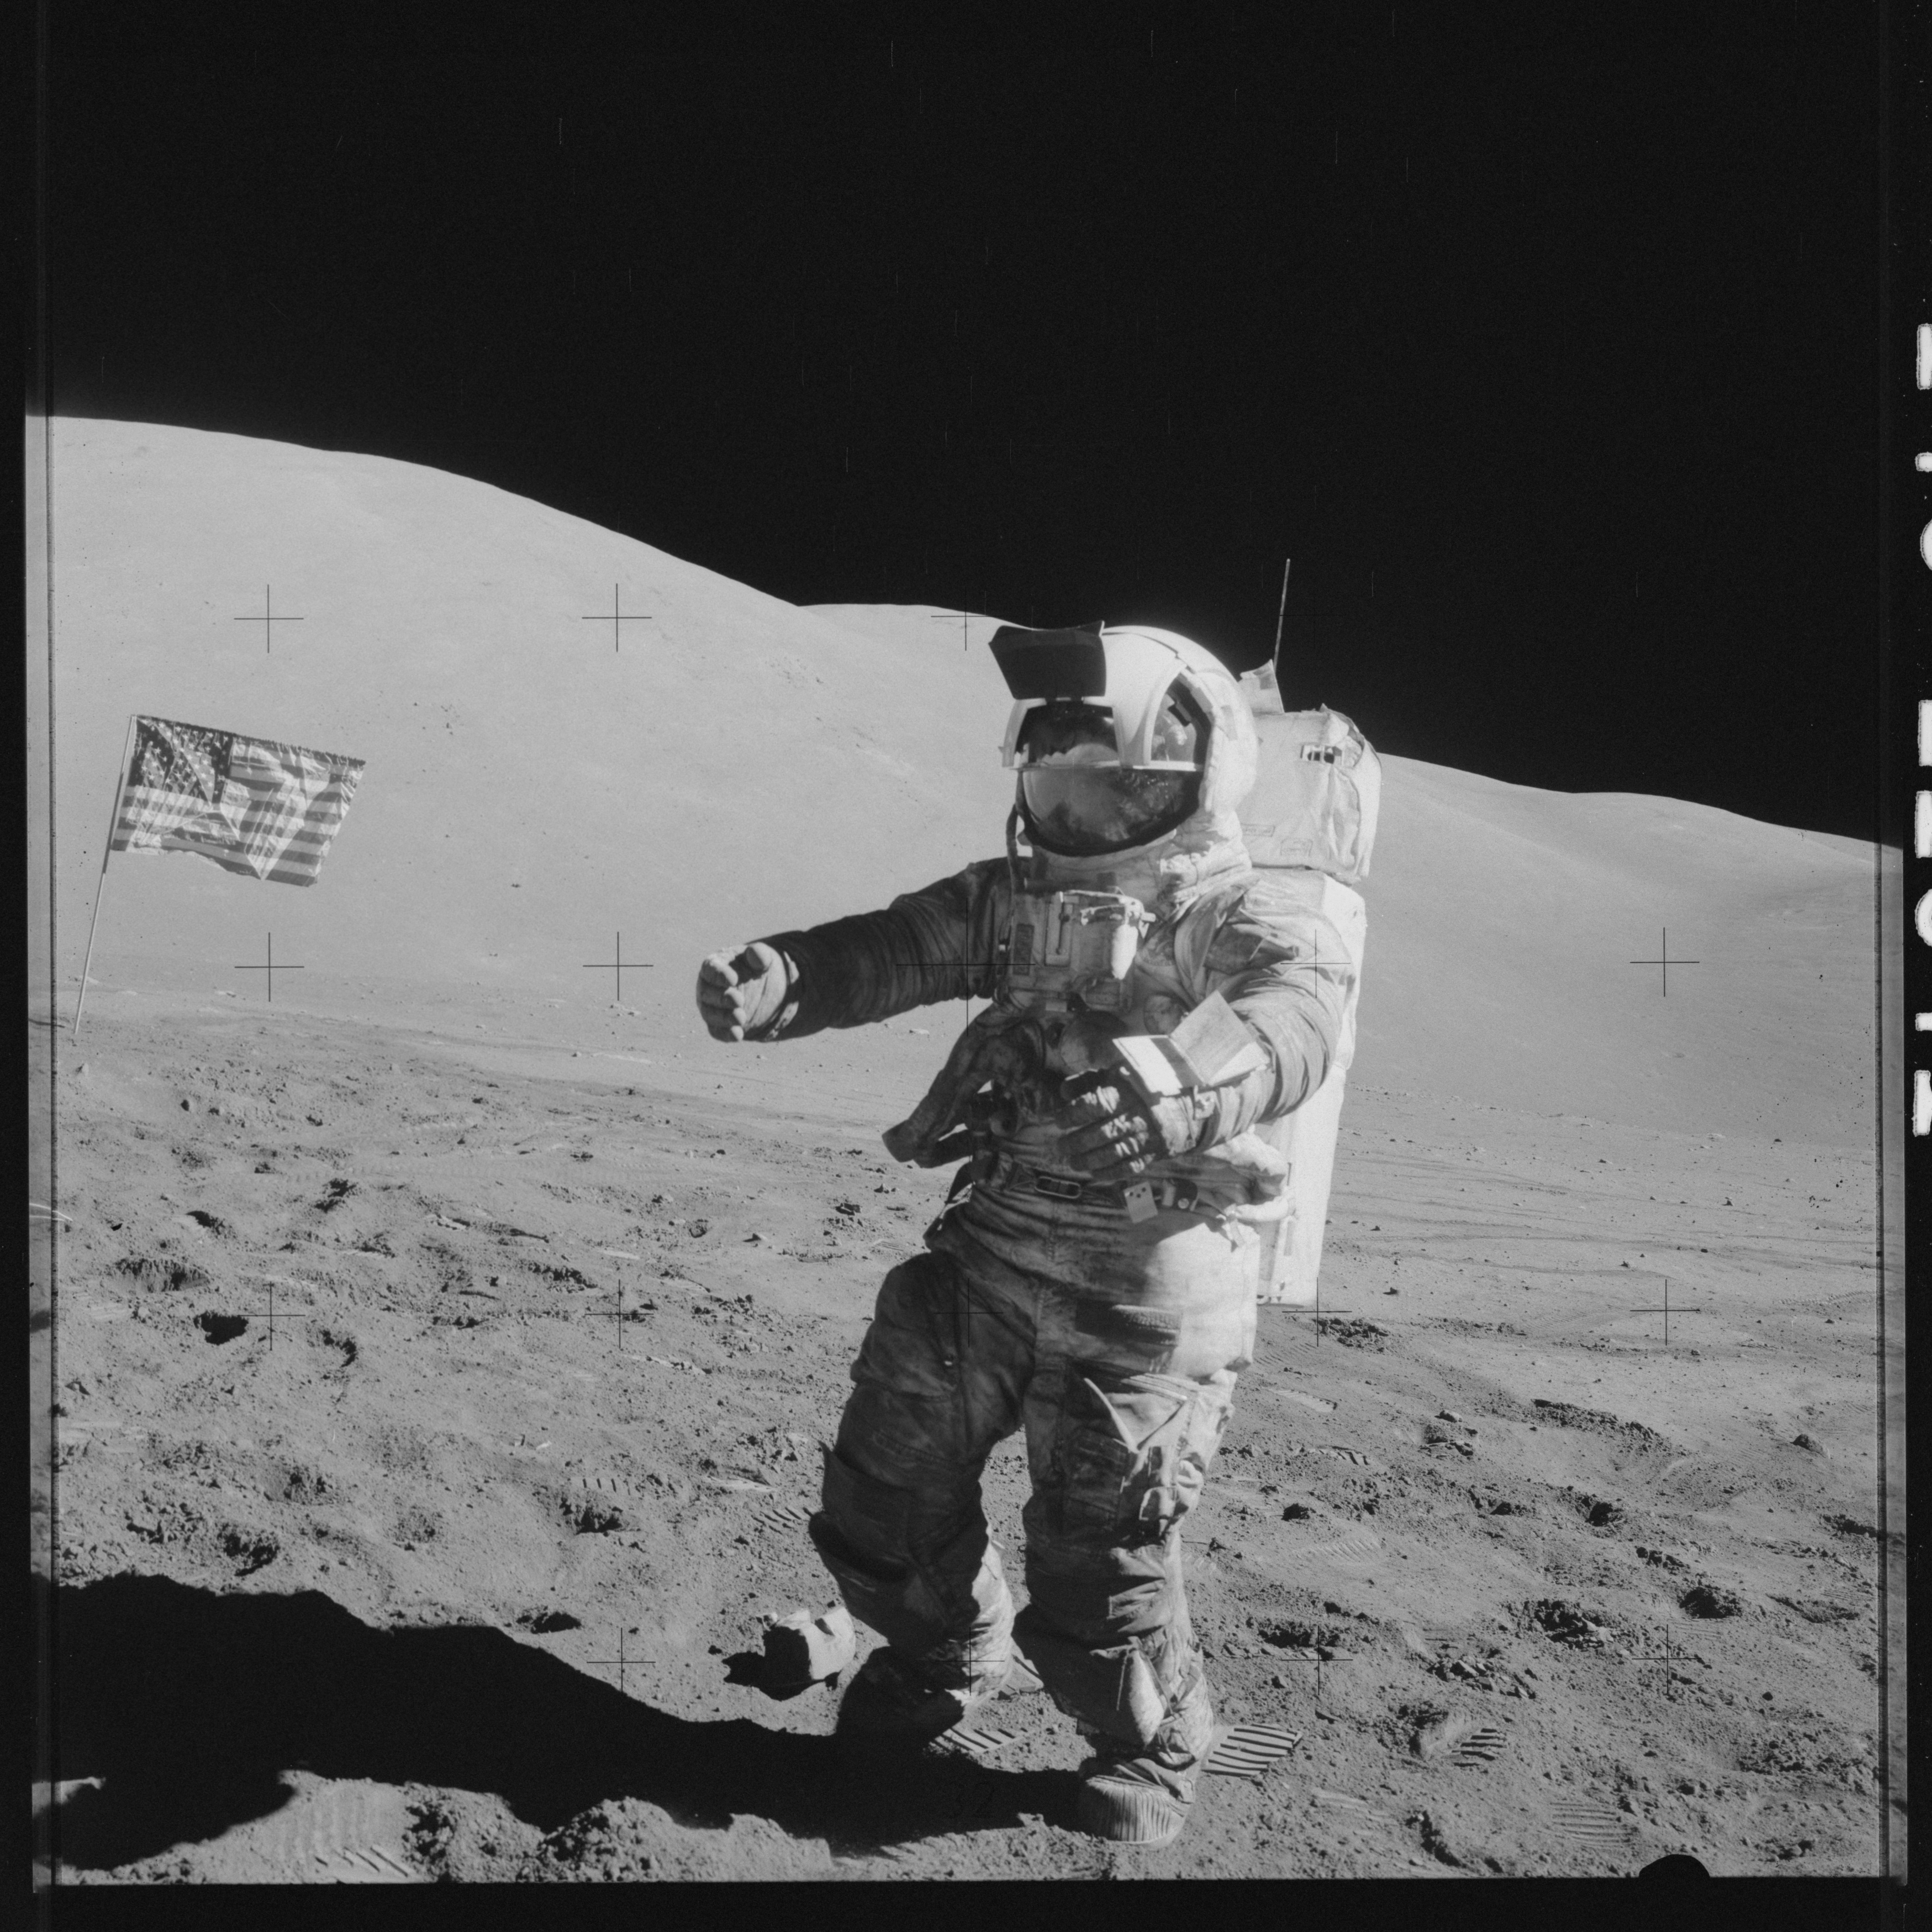 Человек который впервые оказался на поверхности луны. Аполлон 17. Шмитт астронавт фото НАСА Аполлон 17. Аполлон 17 на Луне. 1969 Первый человек на Луне.